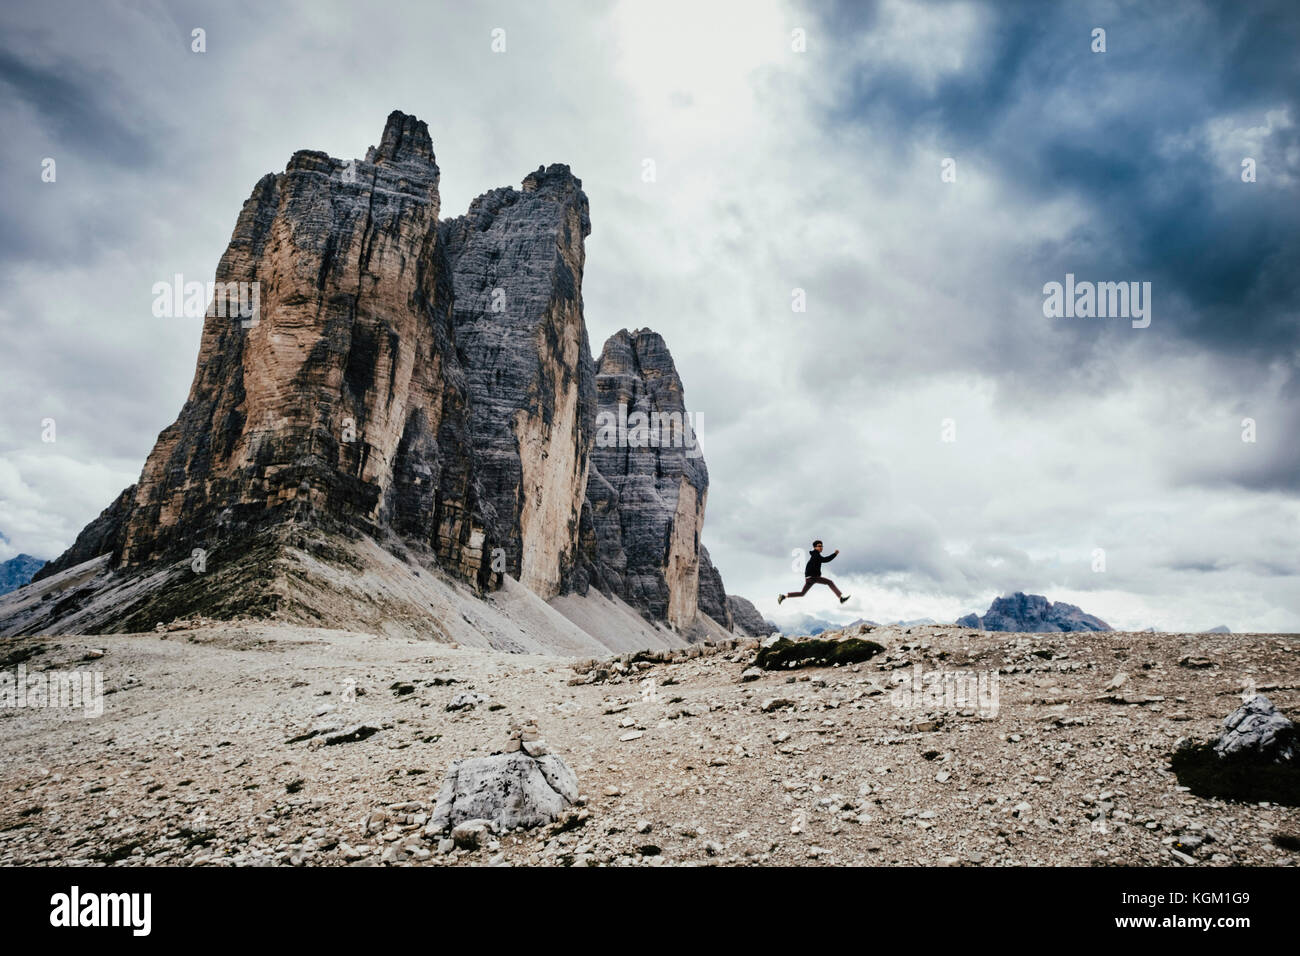 Ángulo de visión baja de adolescente saltando sobre rocas en Alpes contra el cielo nublado, Tirol del Sur, Italia Foto de stock